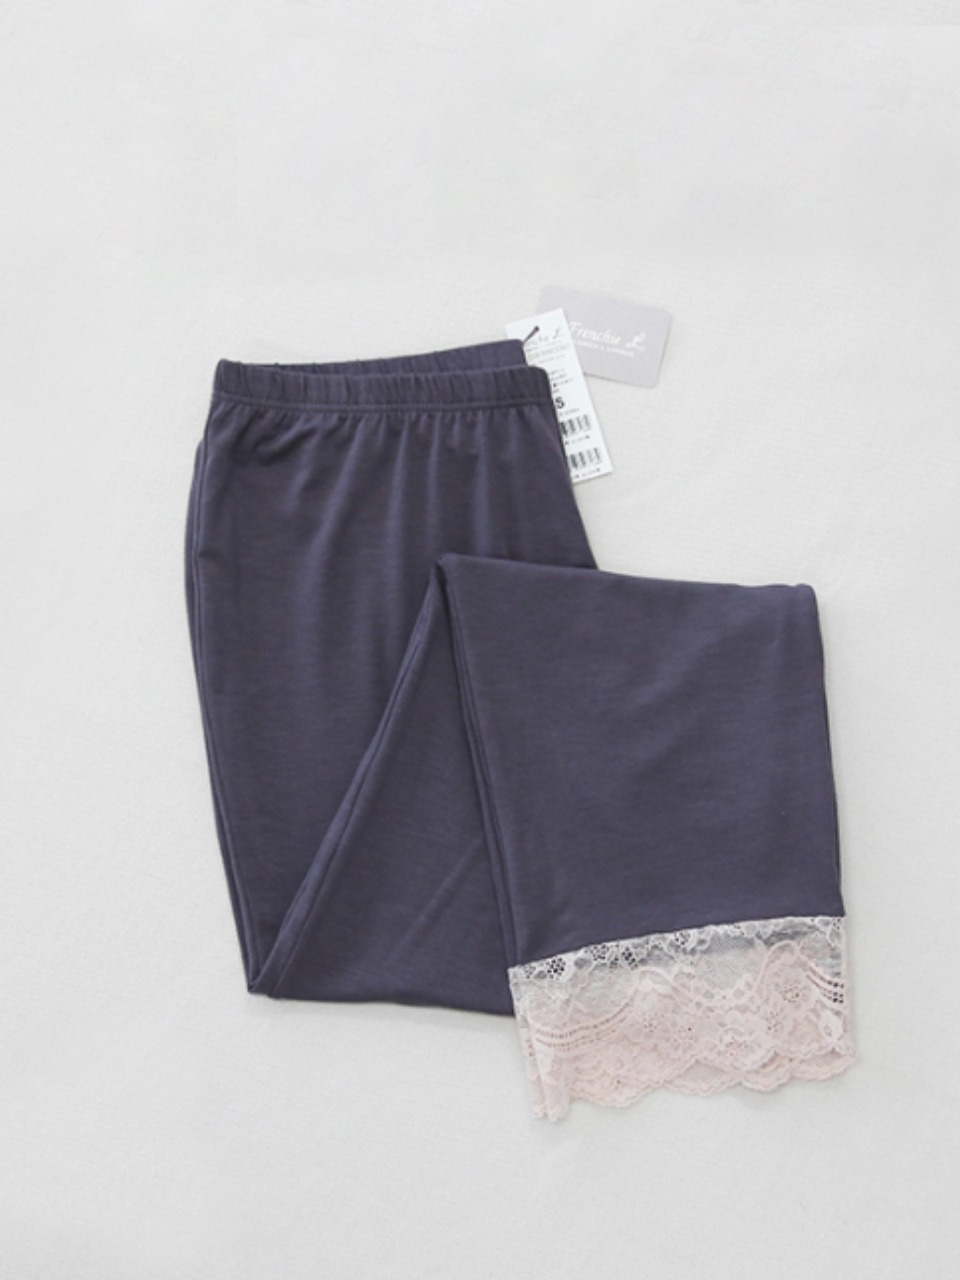 Lace Match Tencel Pants - Charcoal레이스매치 텐셀 이지바지 - 차콜